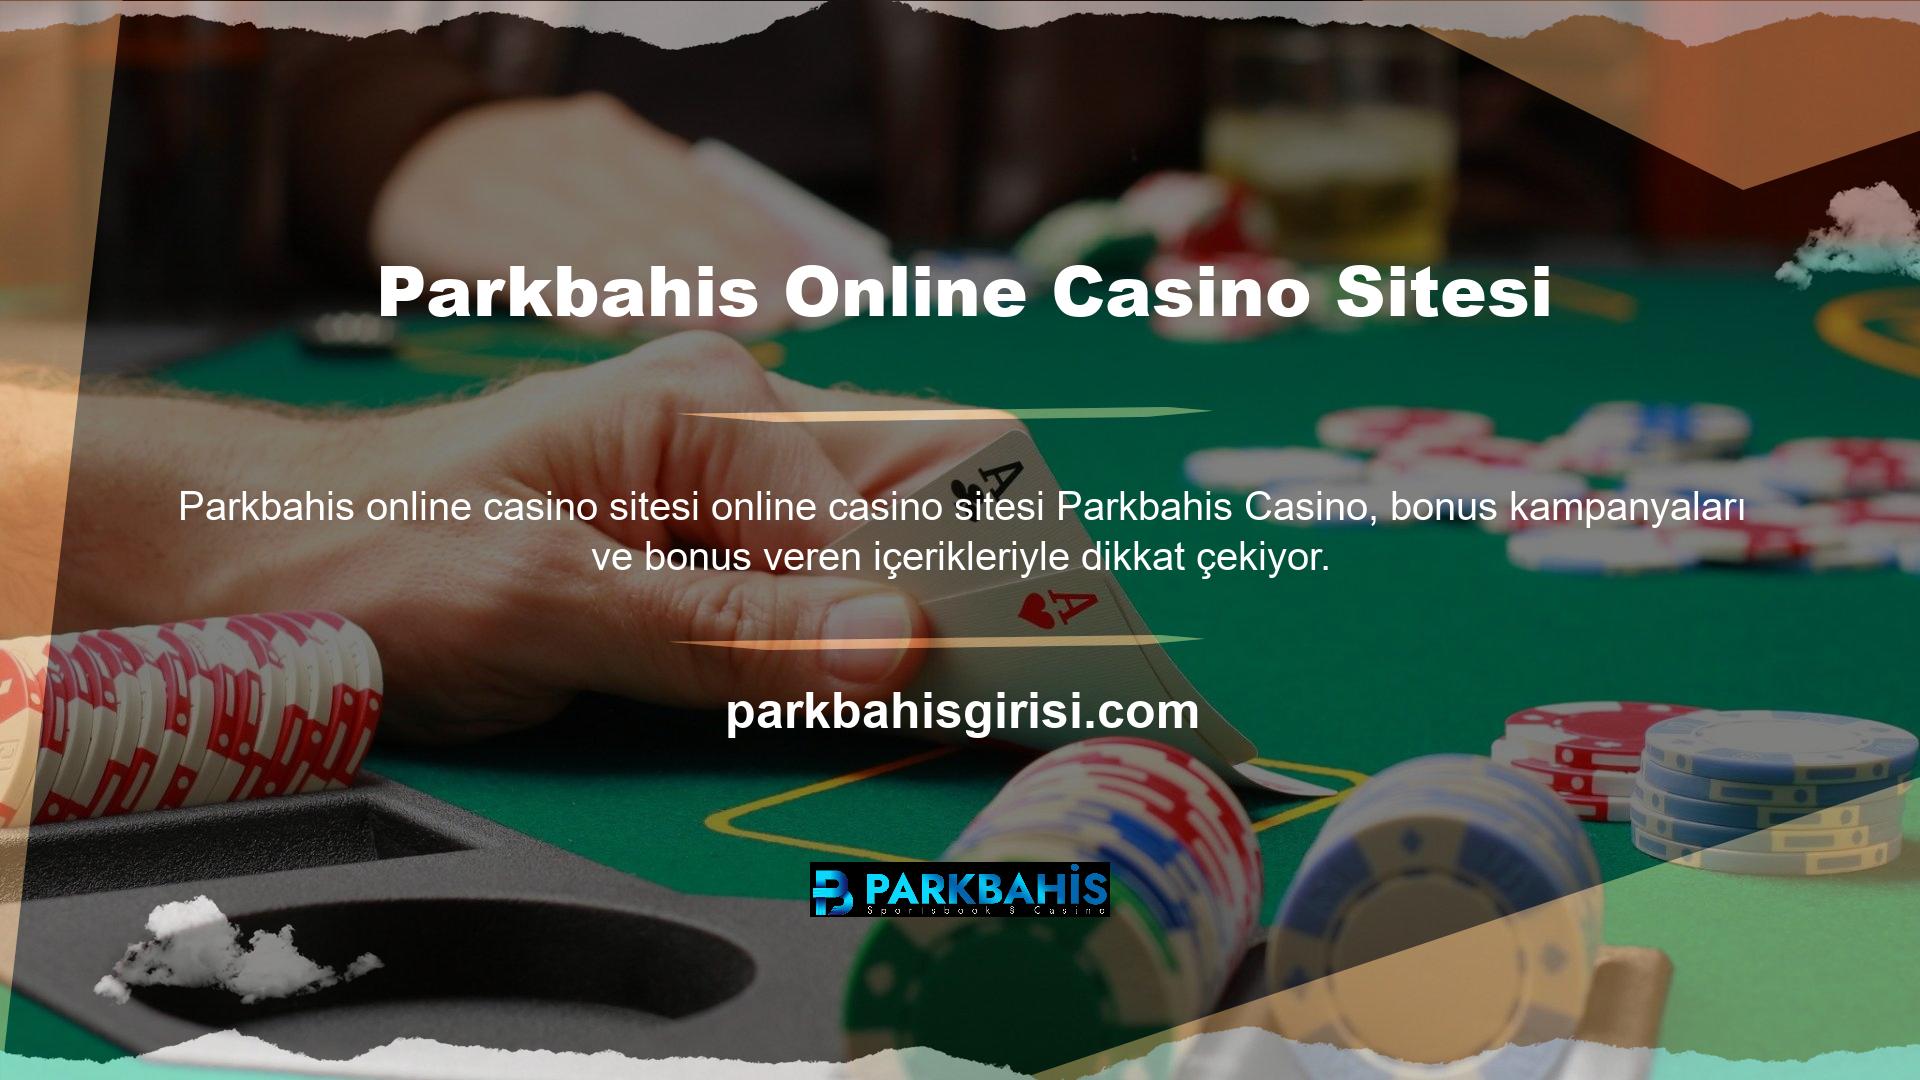 Sitenin kullanıcıları spor bahisleri bölümünde favori sektörlerine bahis oynayabildikleri gibi Parkbahis web sitesinde favori casino oyunlarını oynayarak da para kazanabilirler